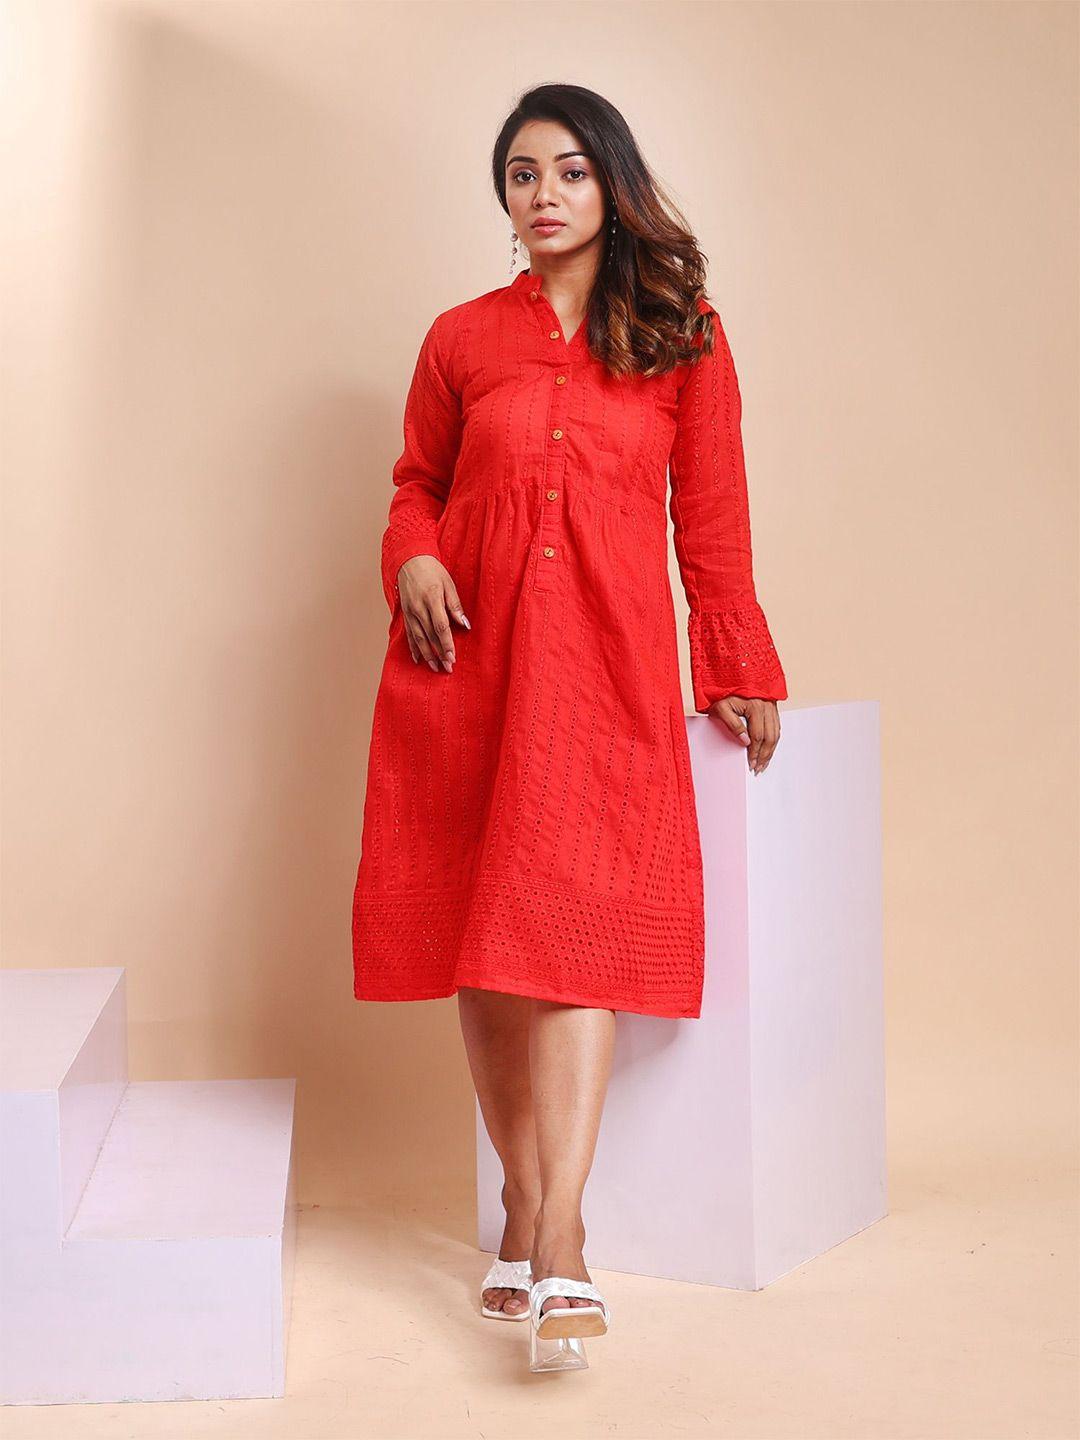 disli red print a-line dress